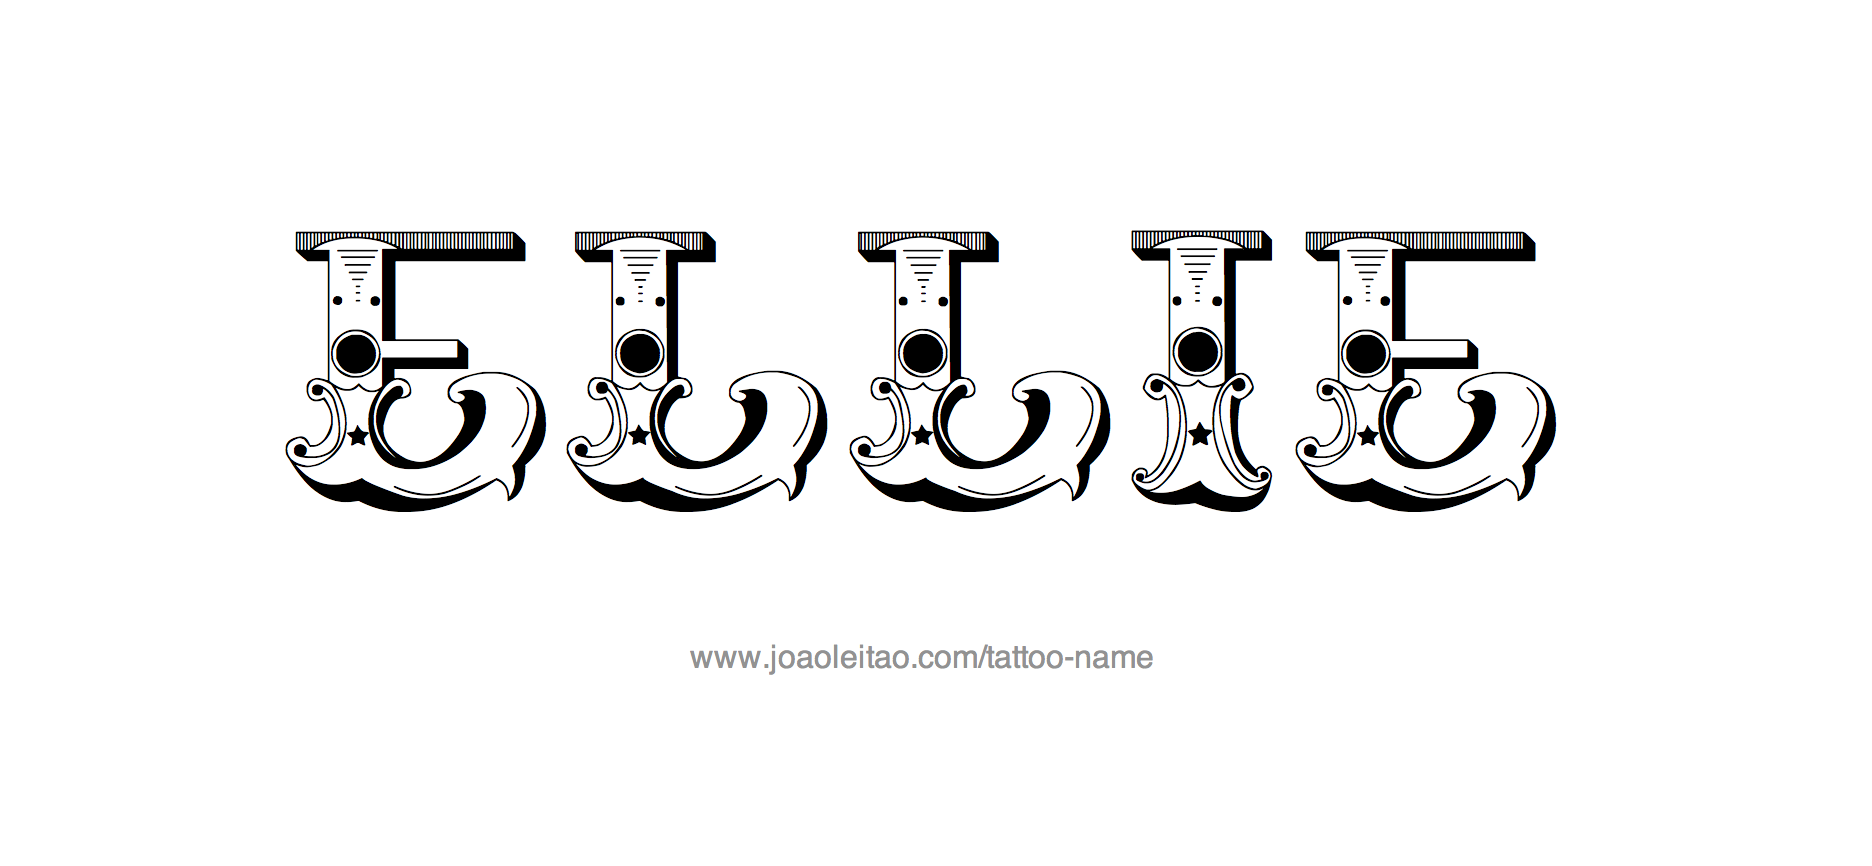 Name tattoo ……❤️ #nametattoo #love #trending . . . . @pratik_darne . . . .  #tattooartist #tattoo #tattoos #tattooart #ink #ink... | Instagram